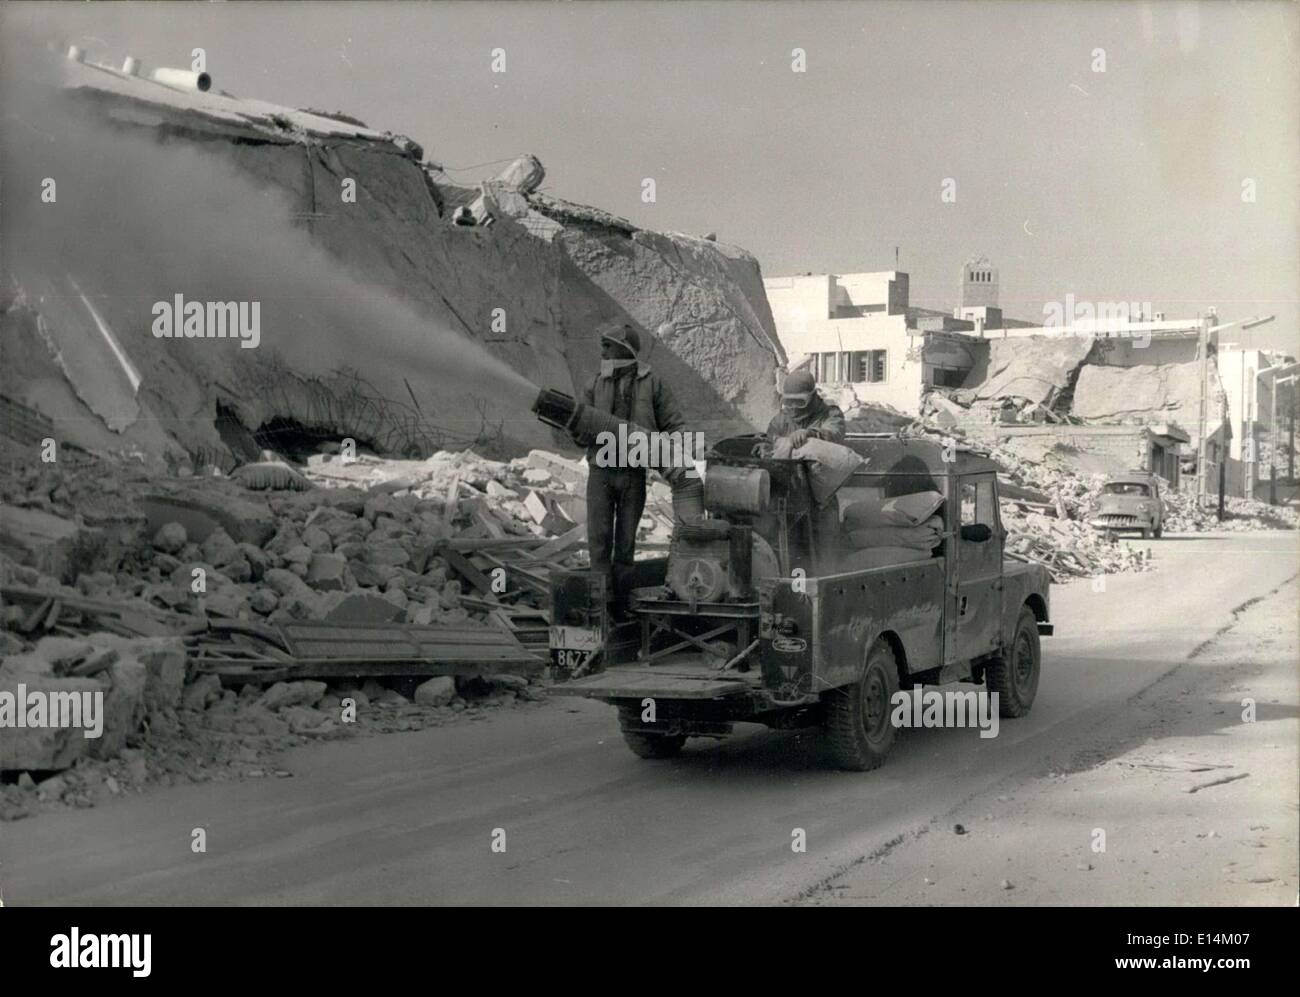 Abril 05, 2012 - Desinfeccion trabaja en Agadir: D.T.T. y anti polvo/pulverizadores de tifus en acción en las calles de la ciudad marroquí de Agadir, destruida por el terremoto reciente. Foto de stock